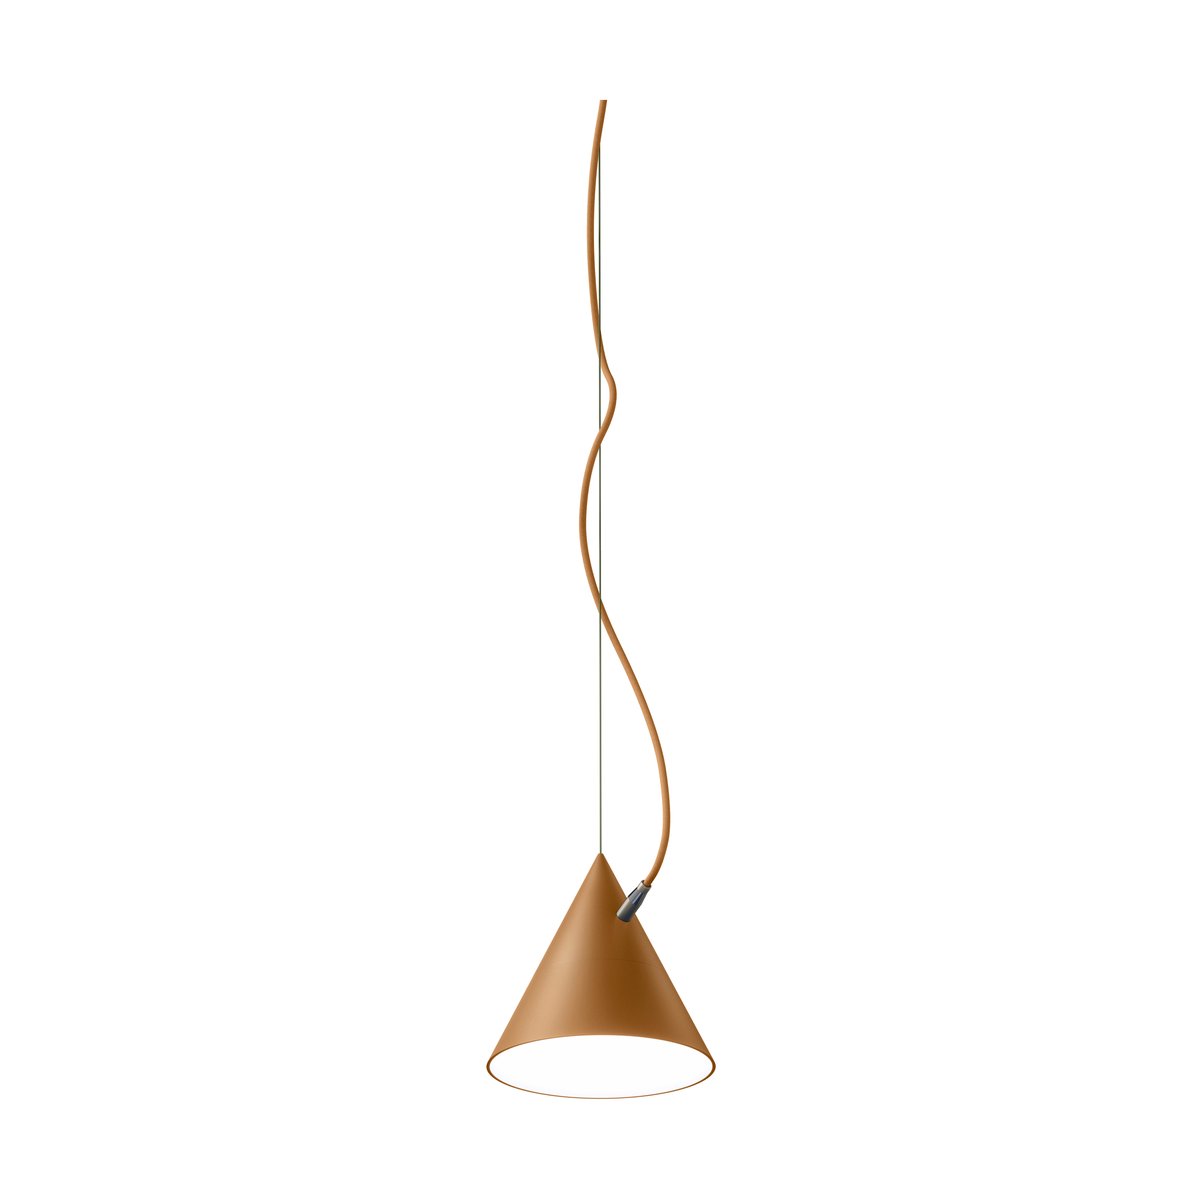 Noon Castor hanglamp 20 cm Bruin-okra-messing